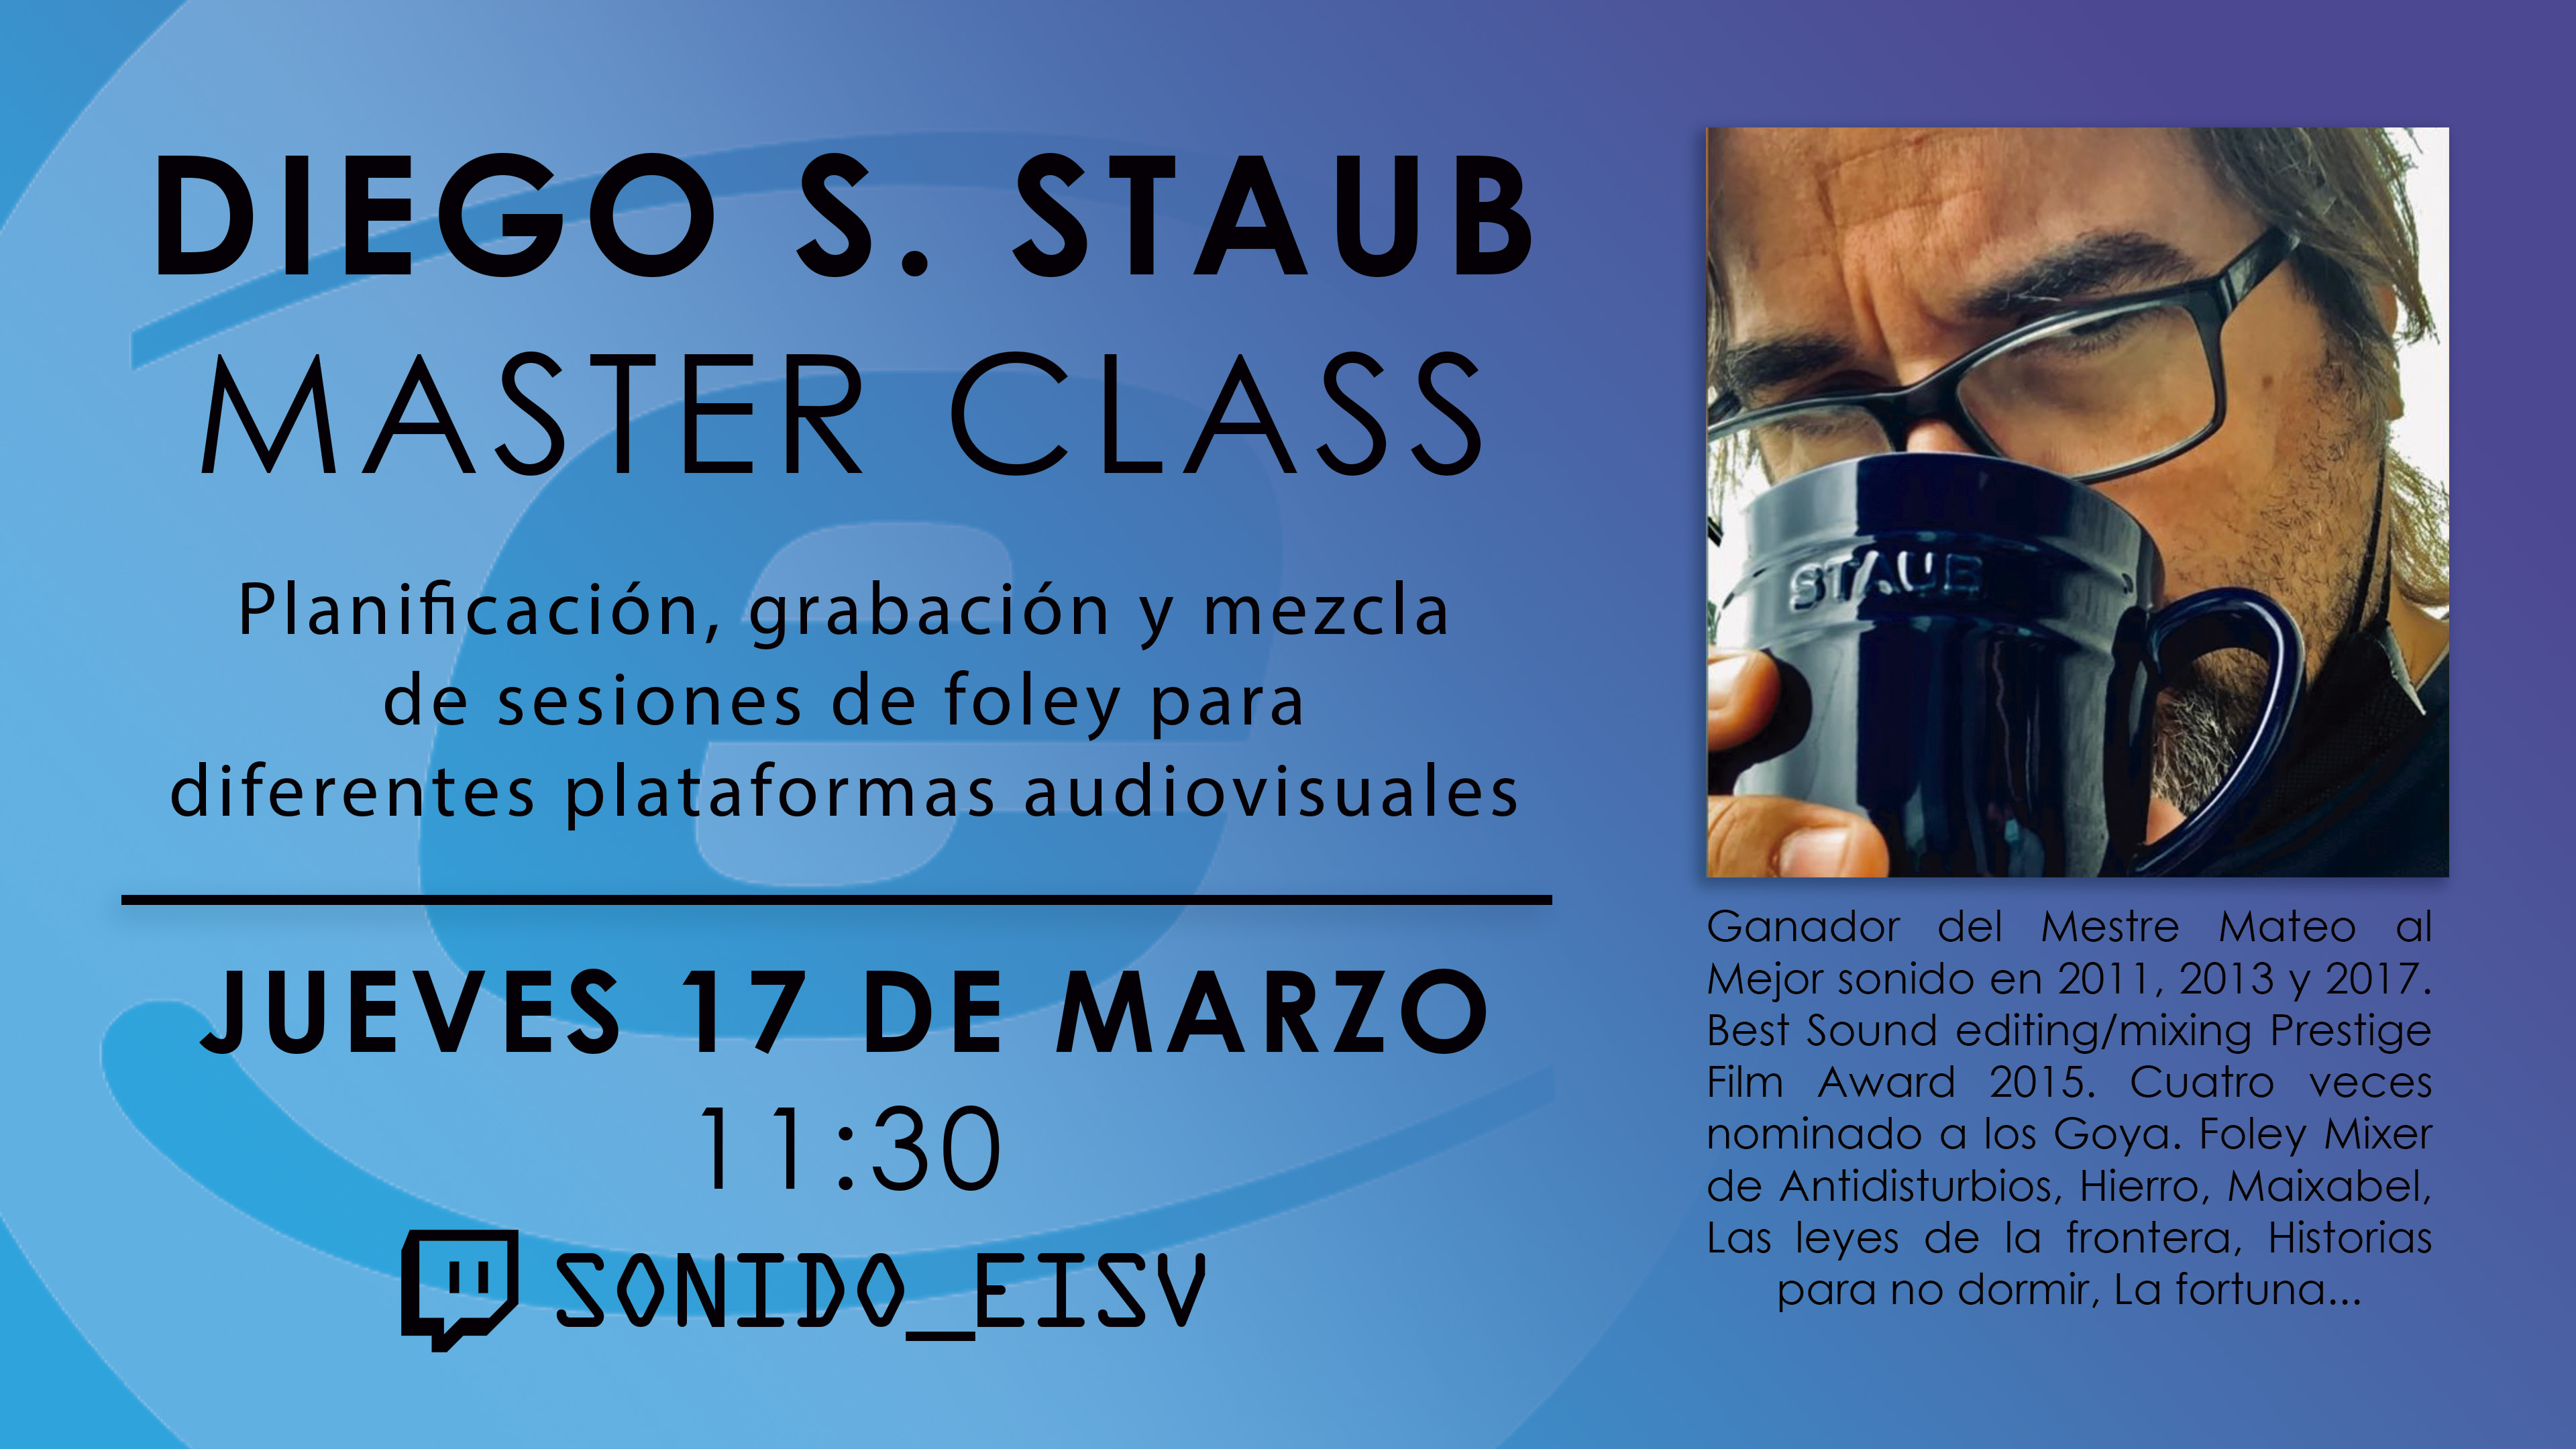 Master Class de Diego Staub